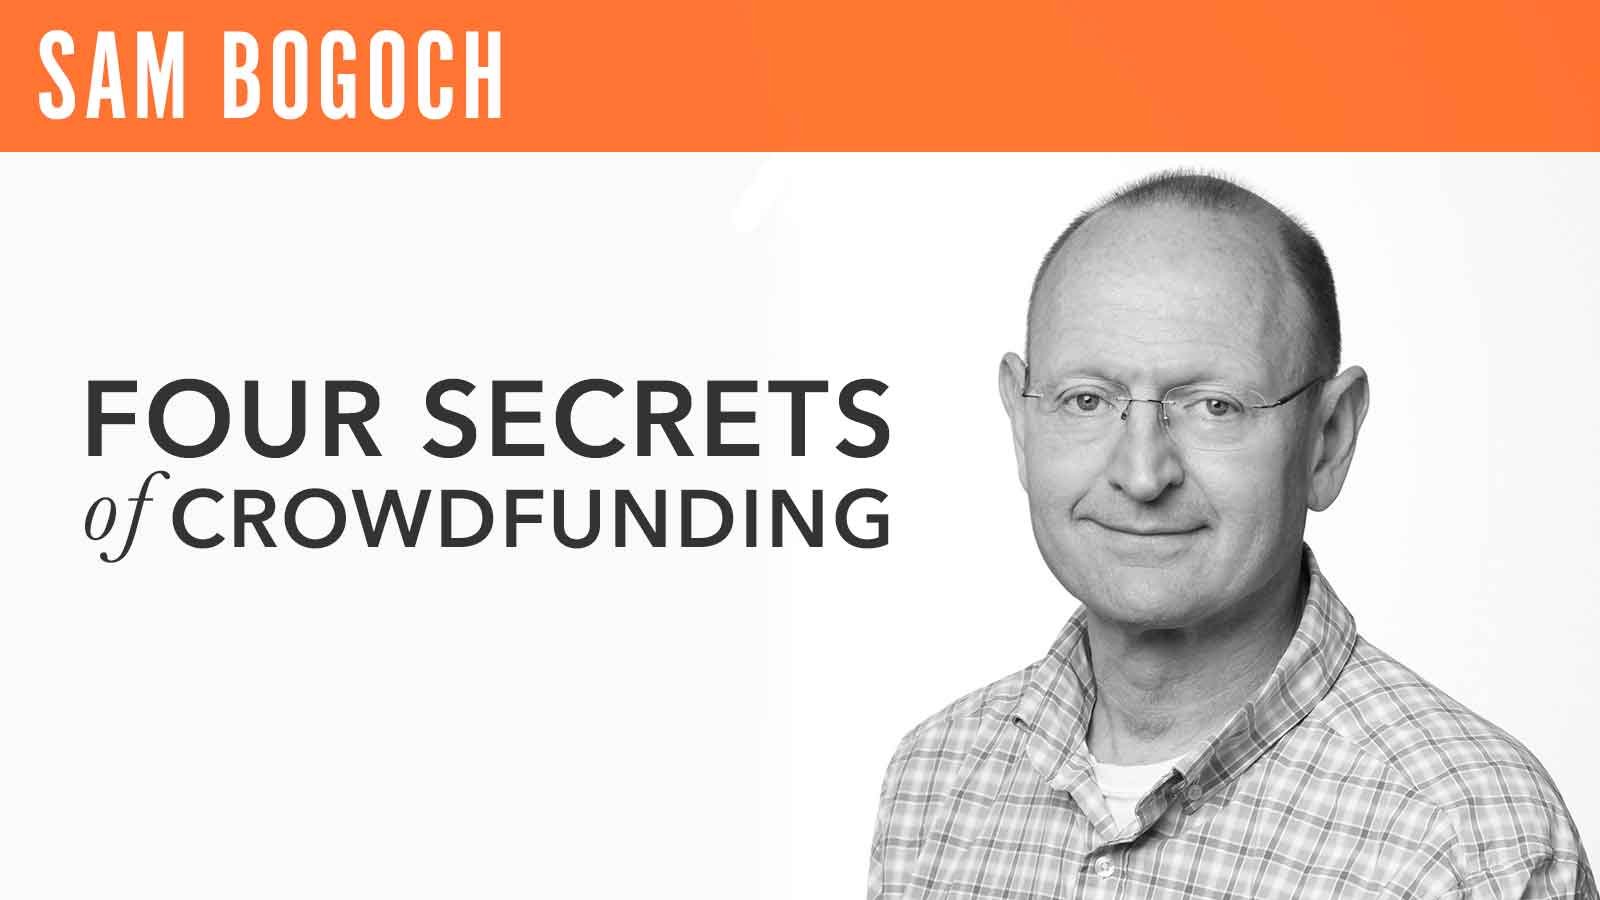 Sam Bogoch, "Four Secrets of Crowdfunding"